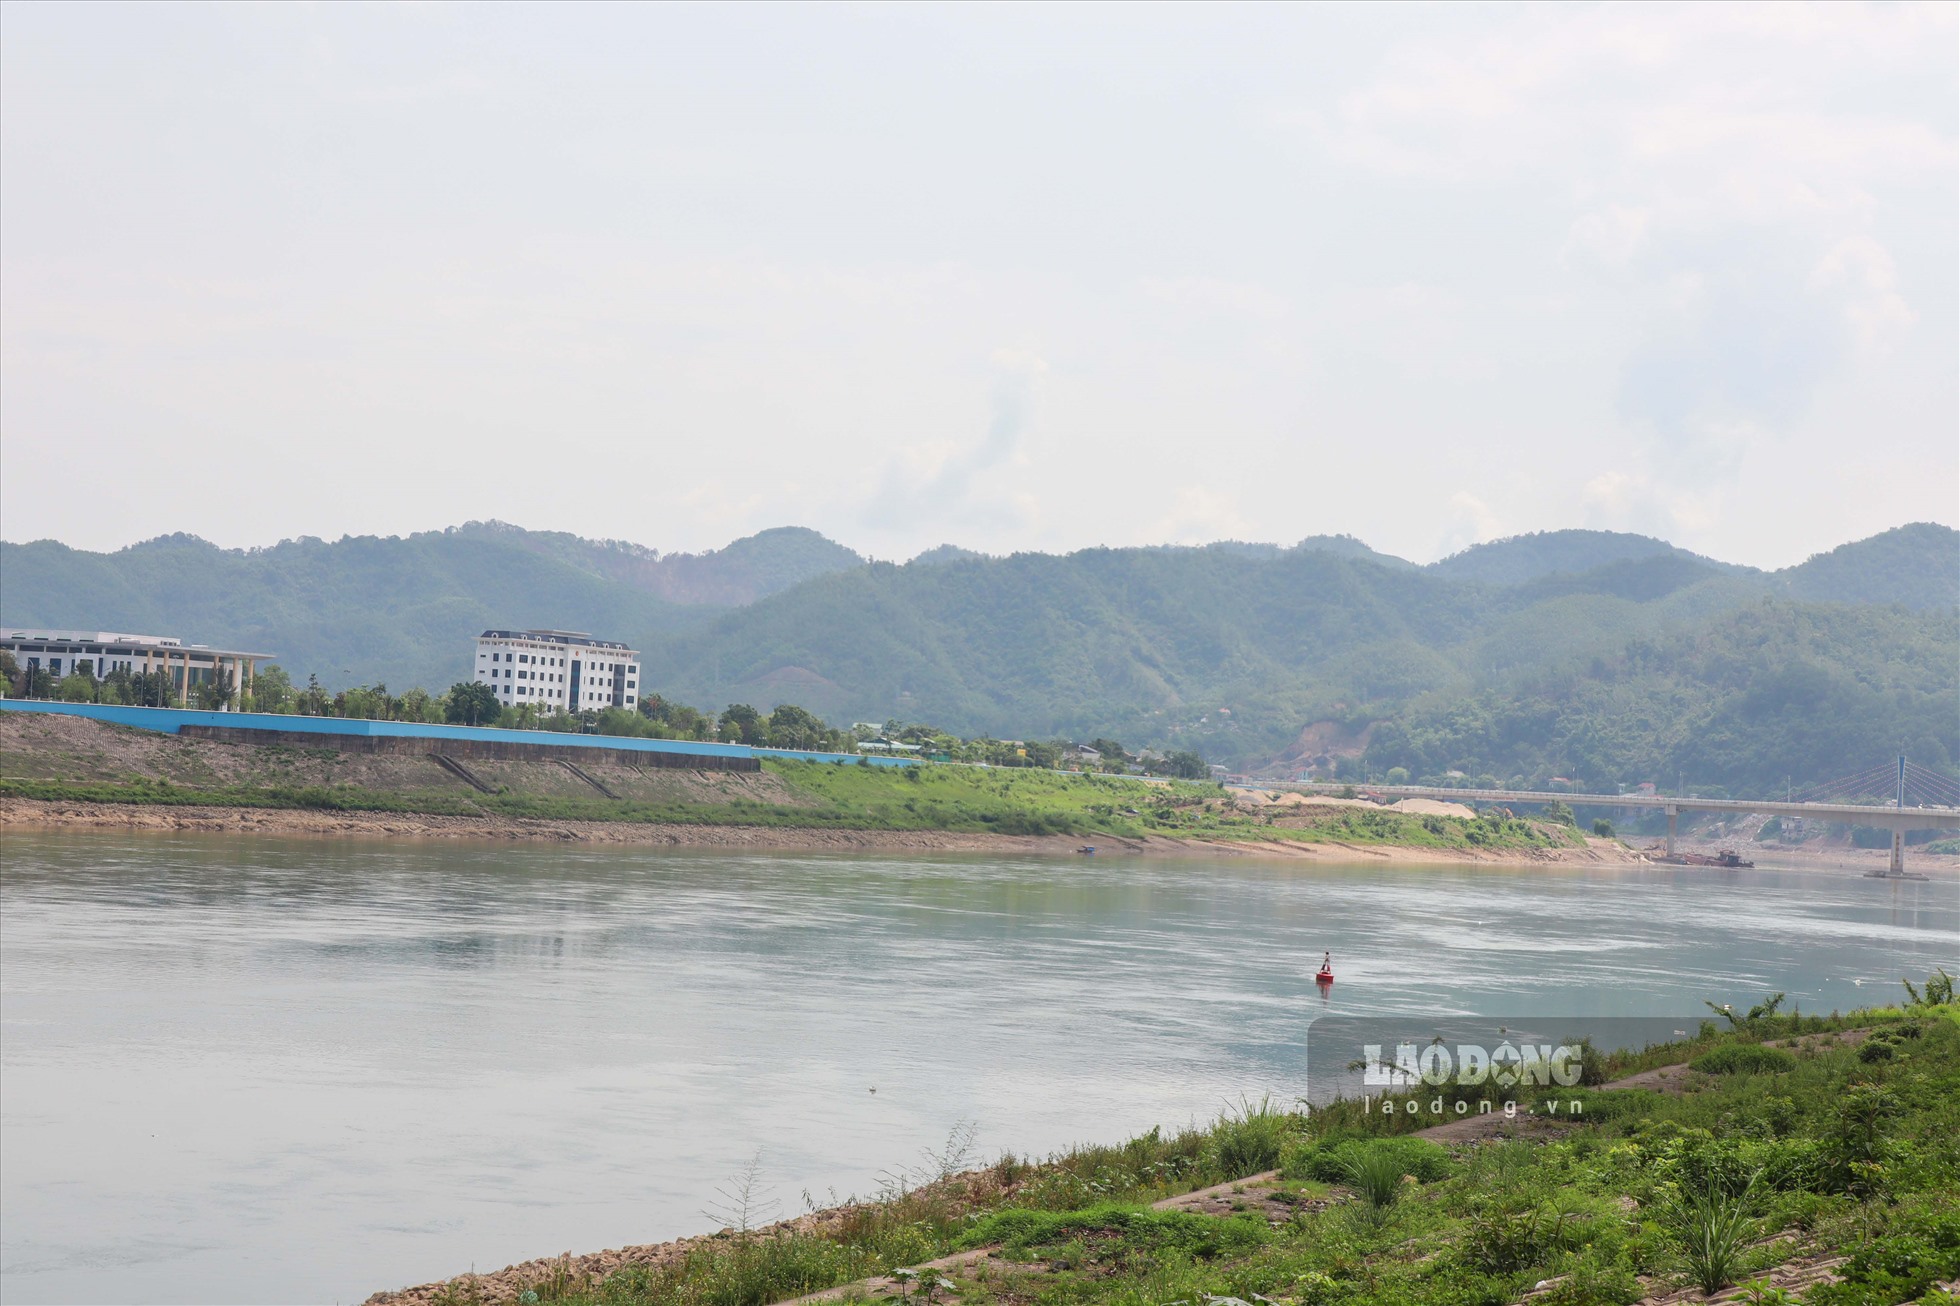 Dọc dòng sông Đà, không còn xuất hiện các còn cát, sỏi nhô lên giữa dòng sông. Cầu Hòa Bình 1 cũng không bị lộ rõ những mố chân cầu.